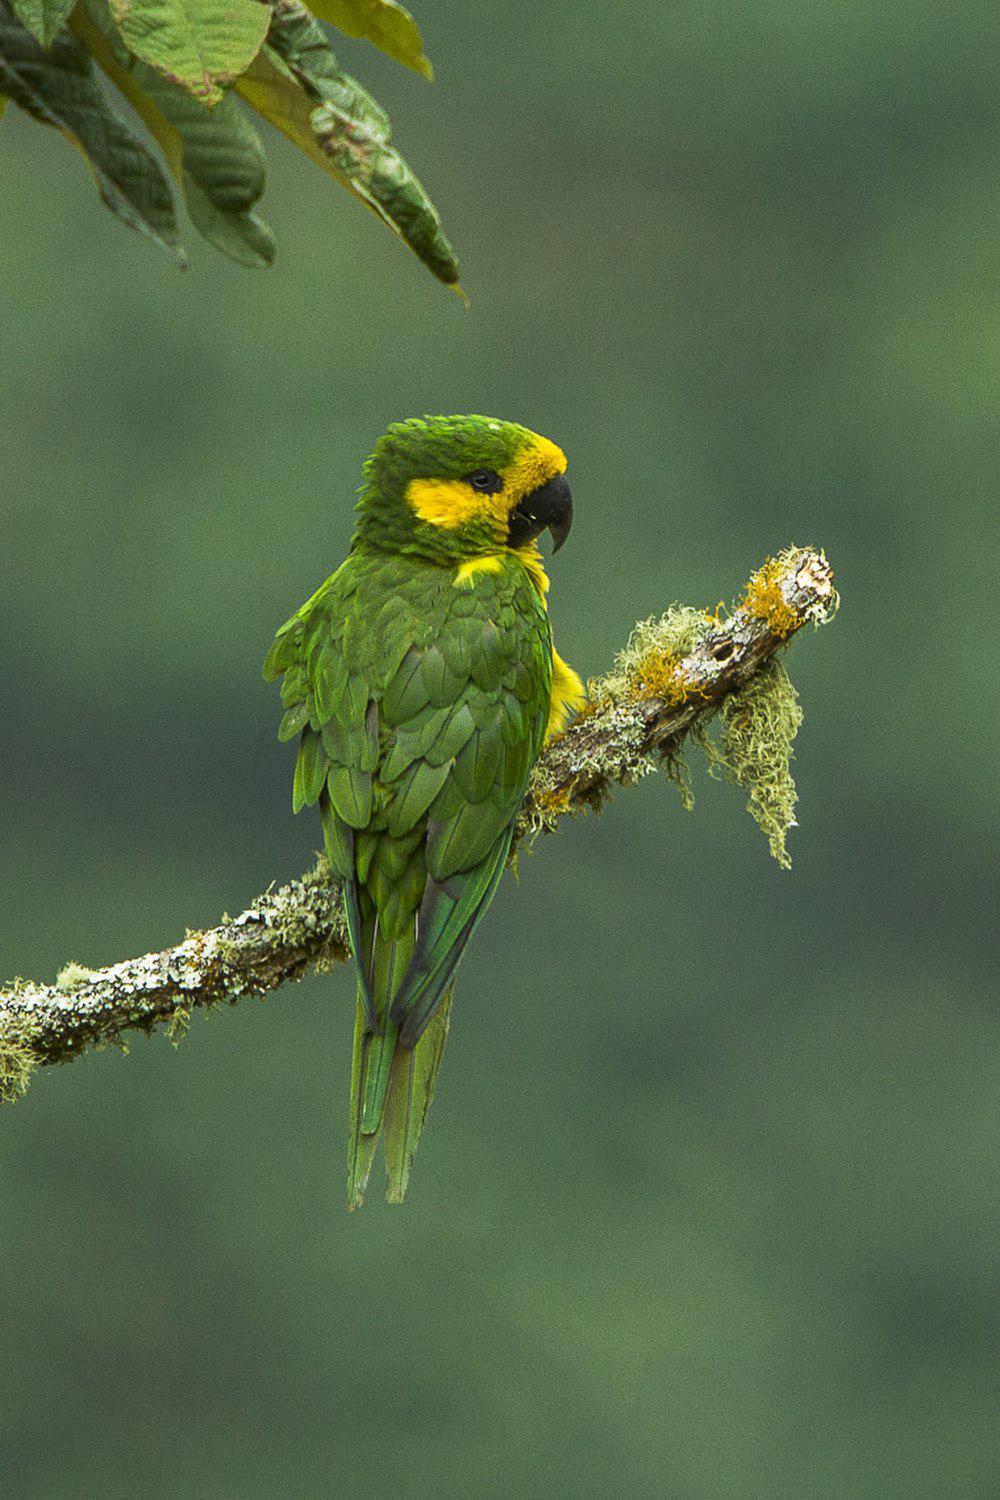 黄耳鹦哥 / Yellow-eared Parrot / Ognorhynchus icterotis